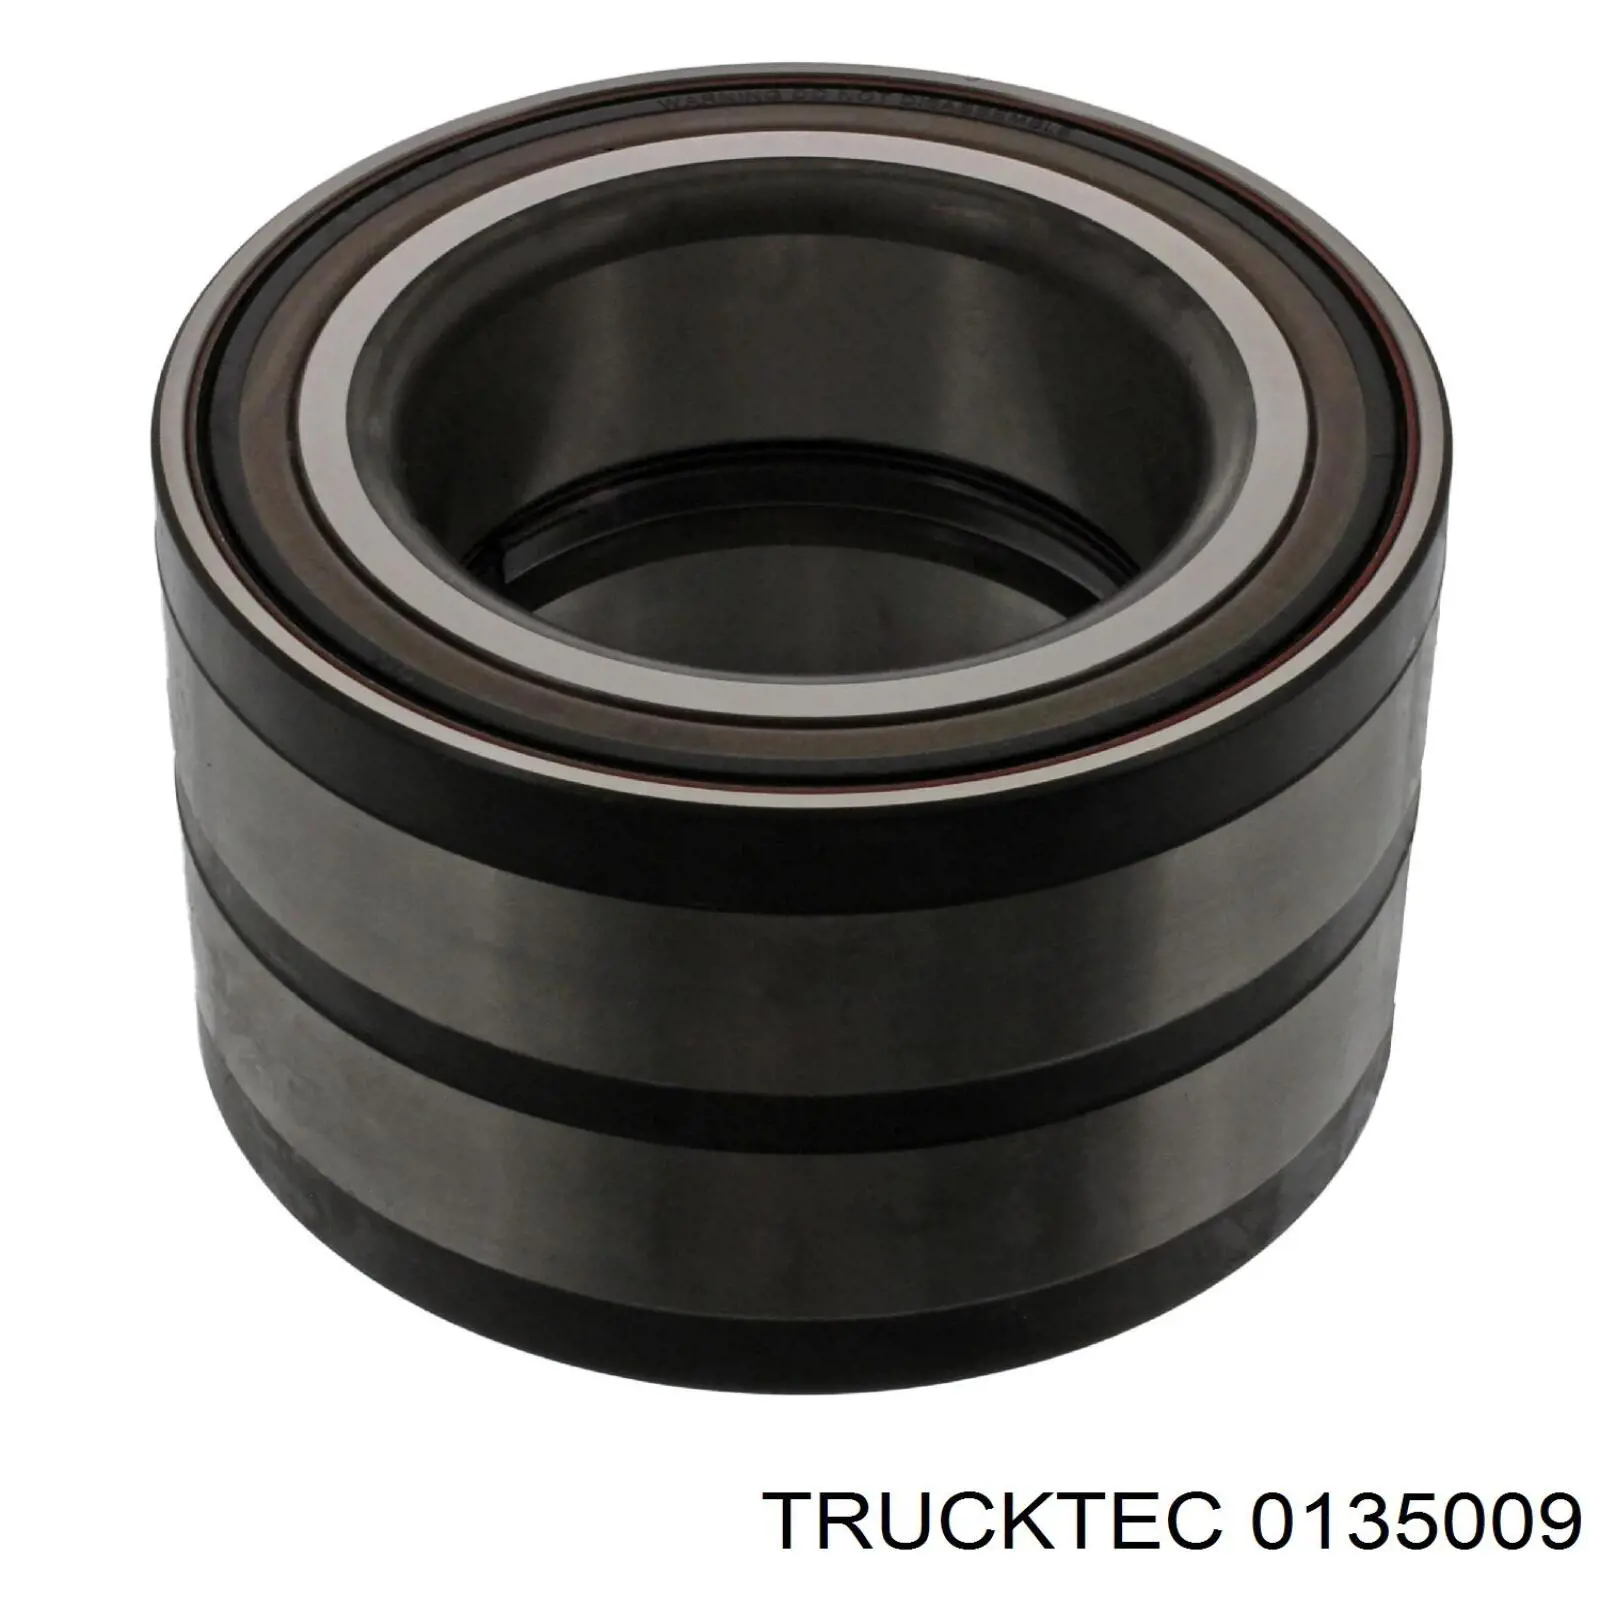 01.35.009 Trucktec cojinete de rueda delantero/trasero